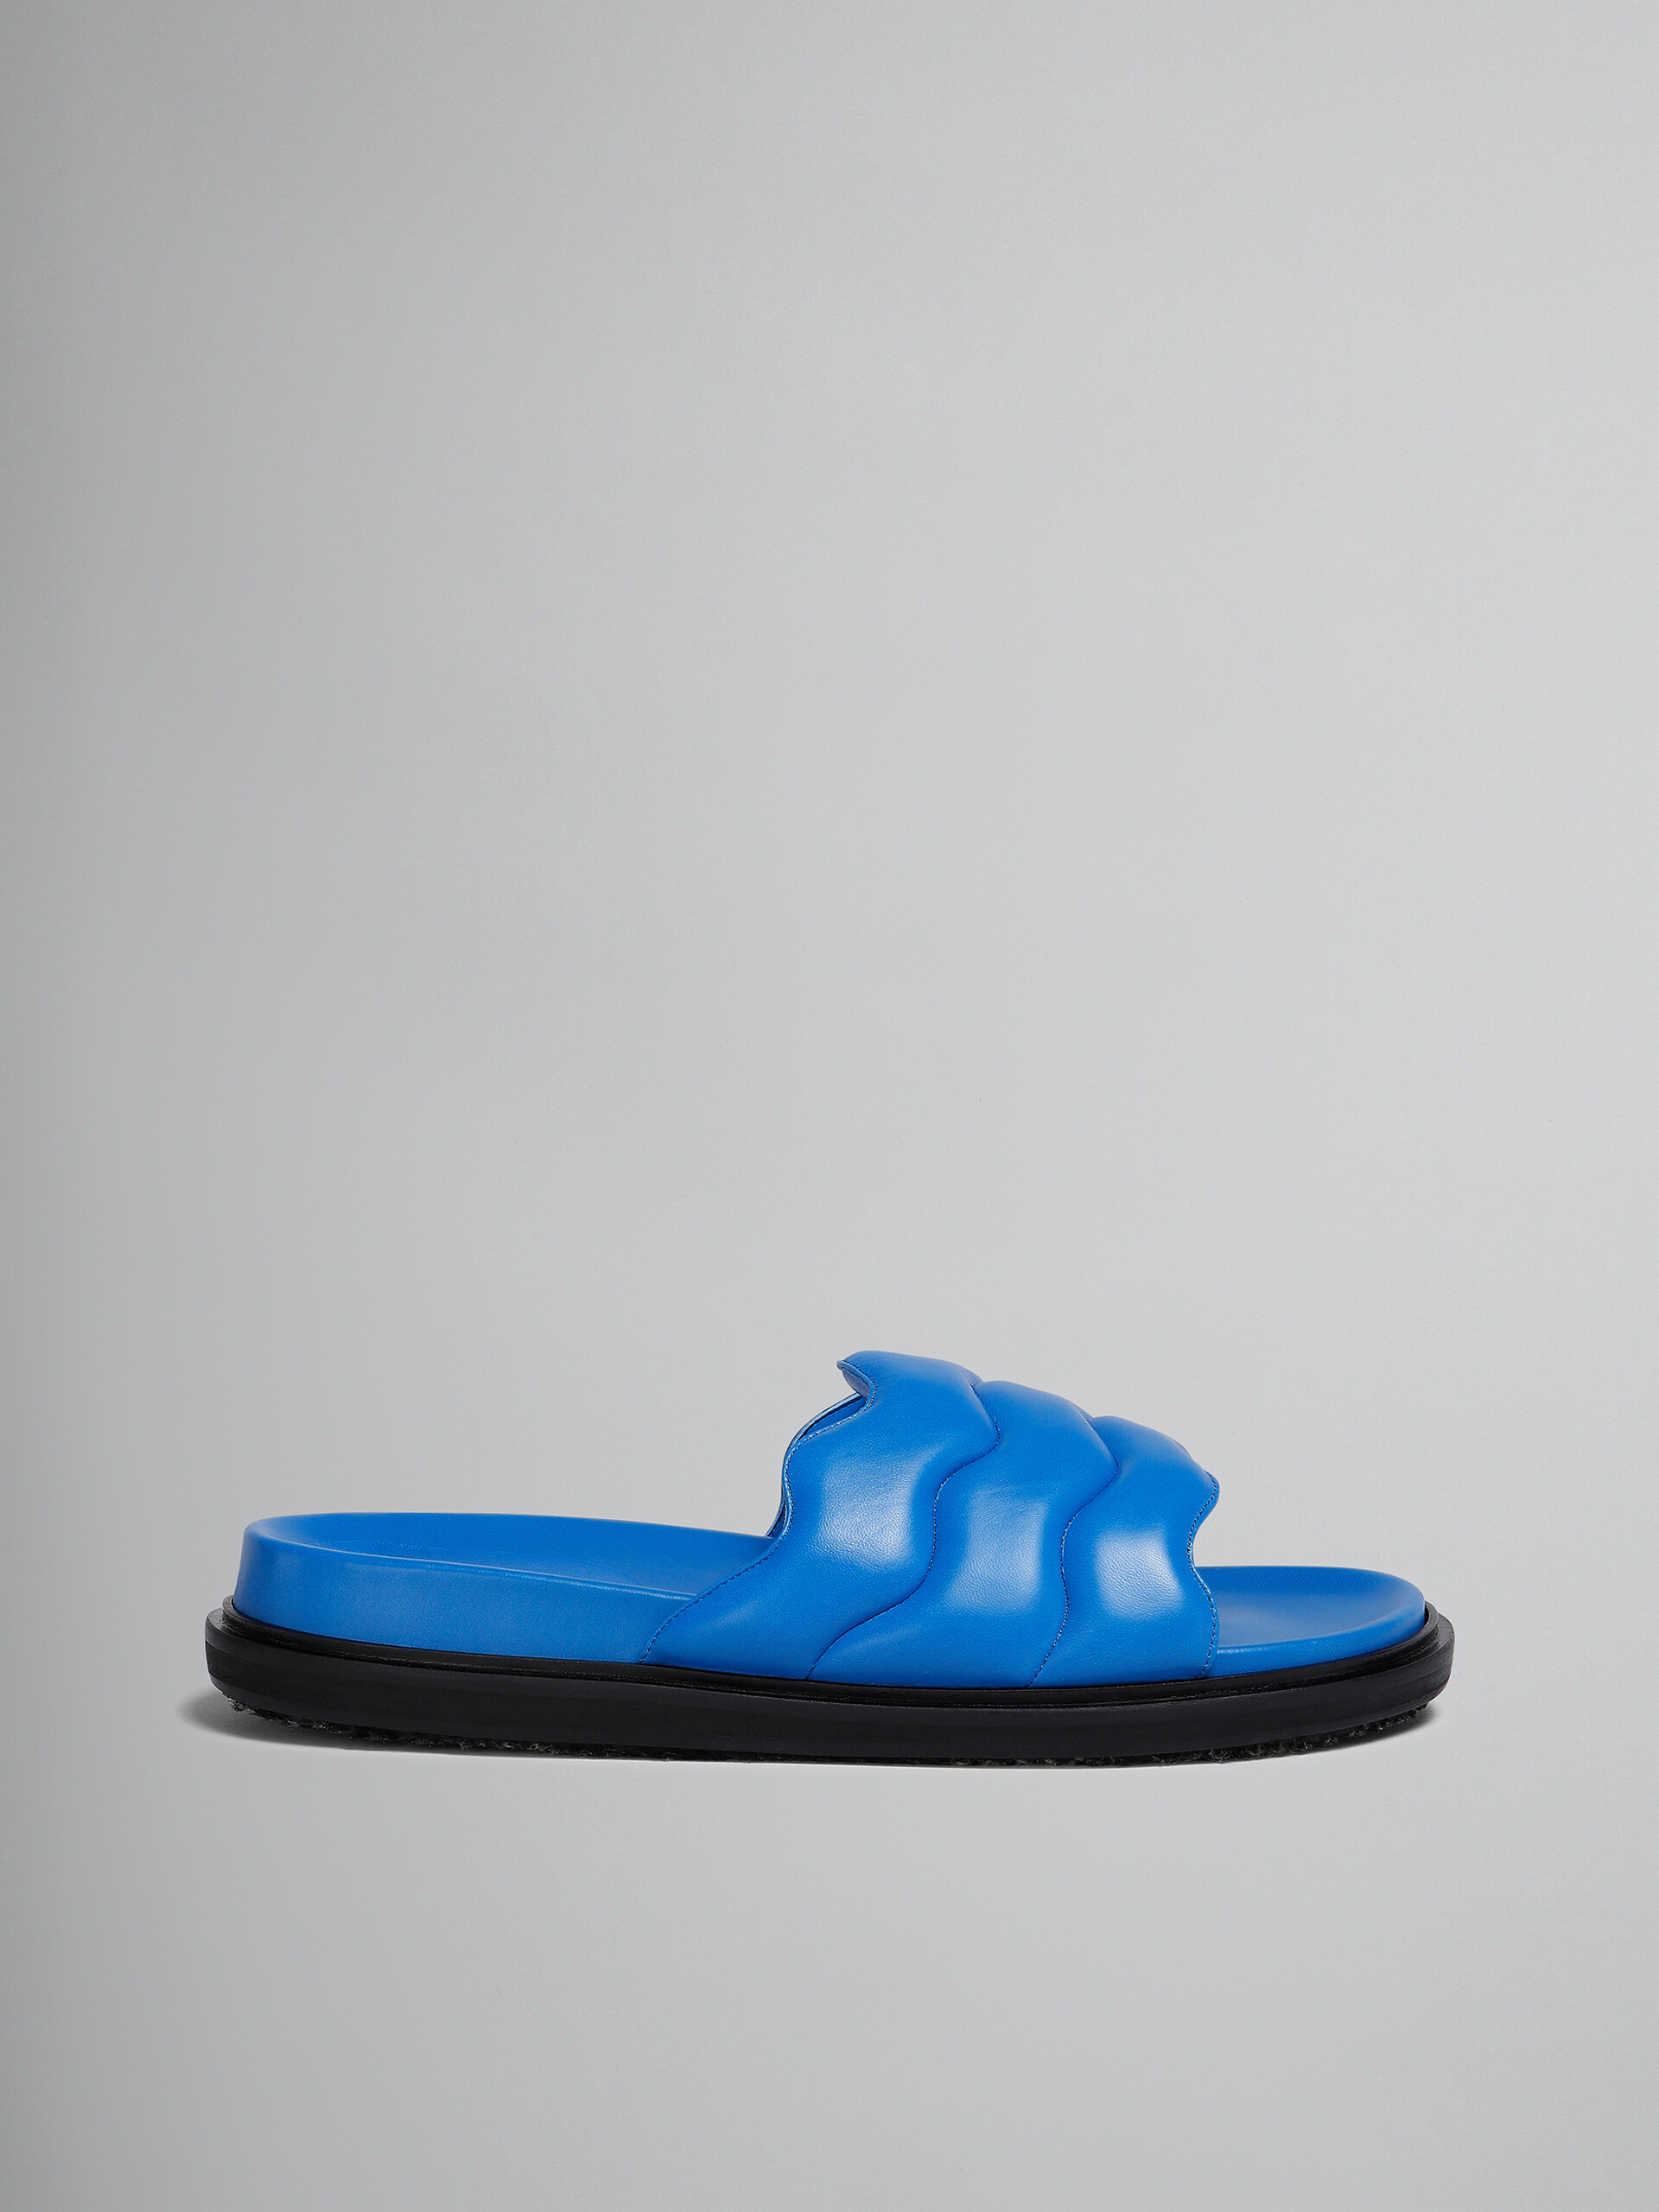 Blue wavy leather slide sandal - Sandals - Image 1